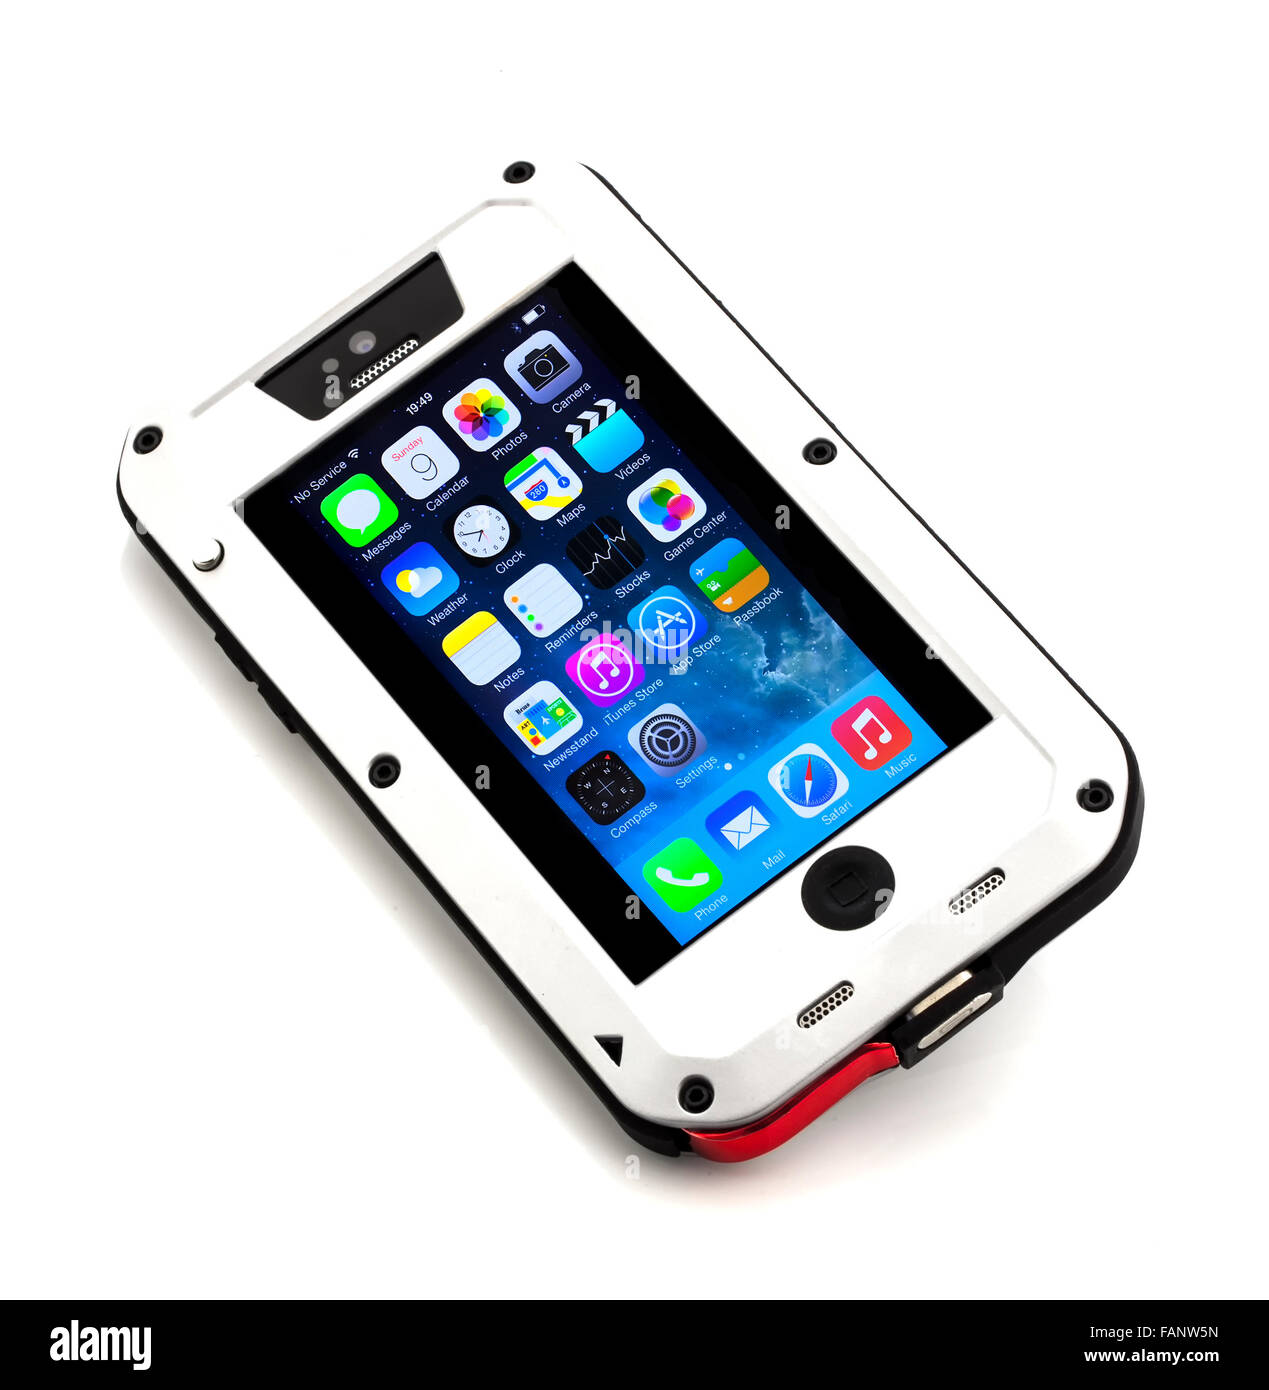 Nuovo Apple iPhone 5S in una robusta custodia su uno sfondo bianco Foto  stock - Alamy